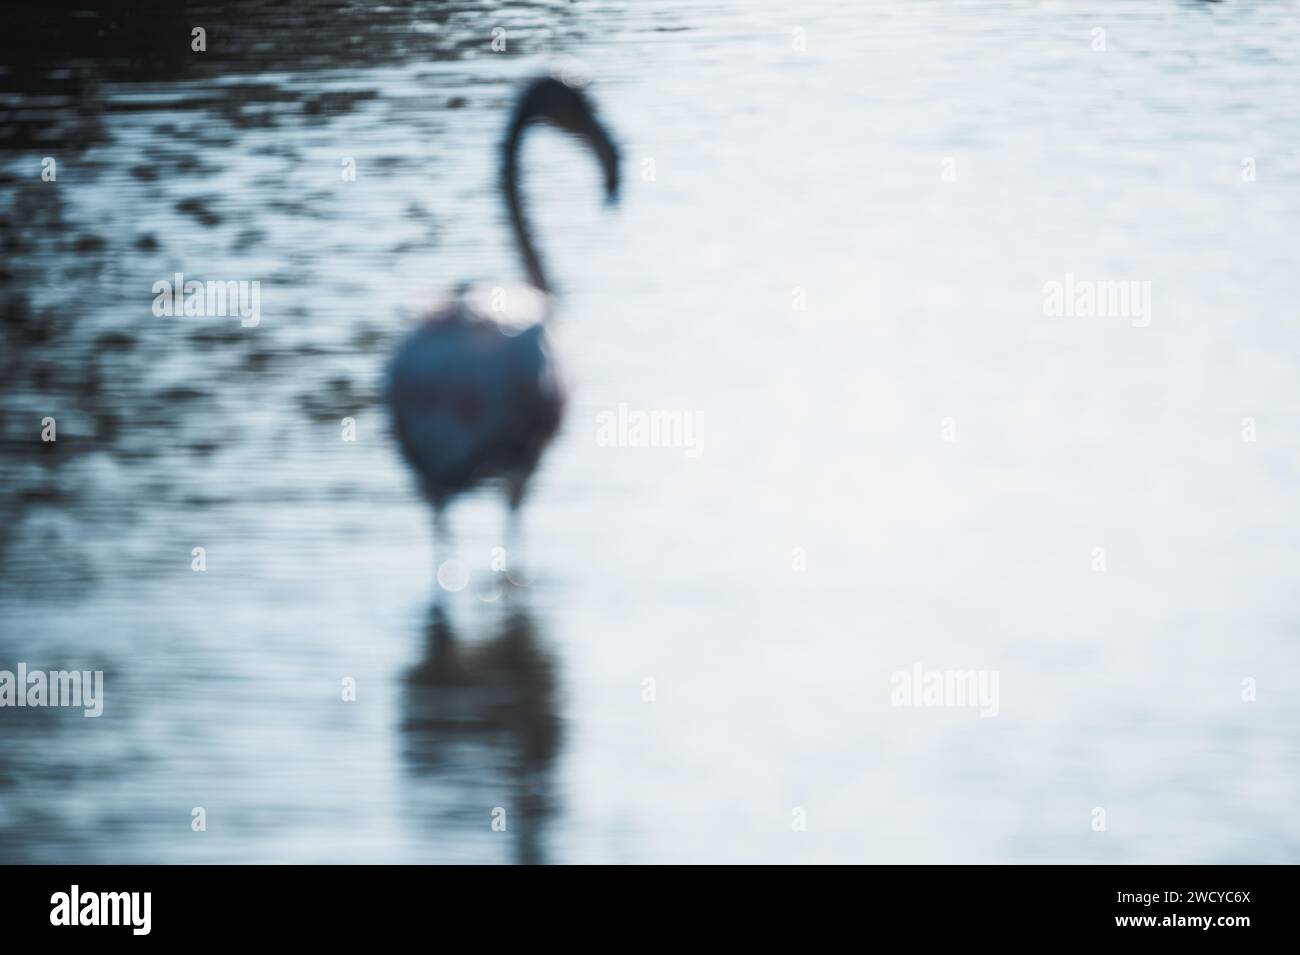 Camargue flamingo artwork Stock Photo